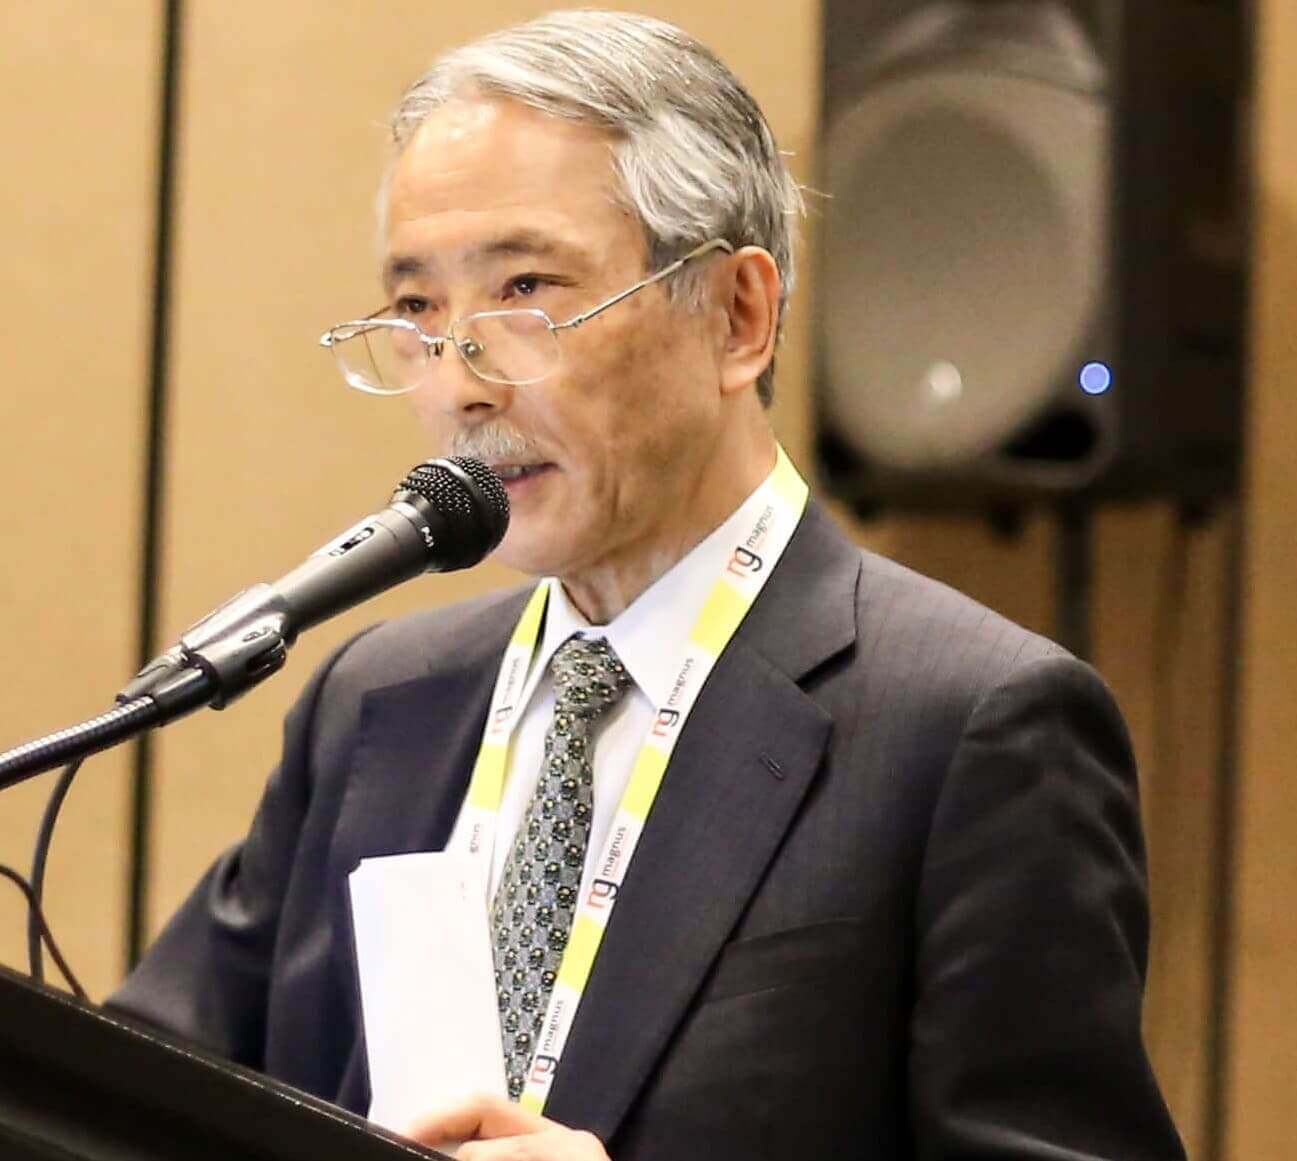 Speaker at upcoming Nursing conferences- Tetsuo Fukawa